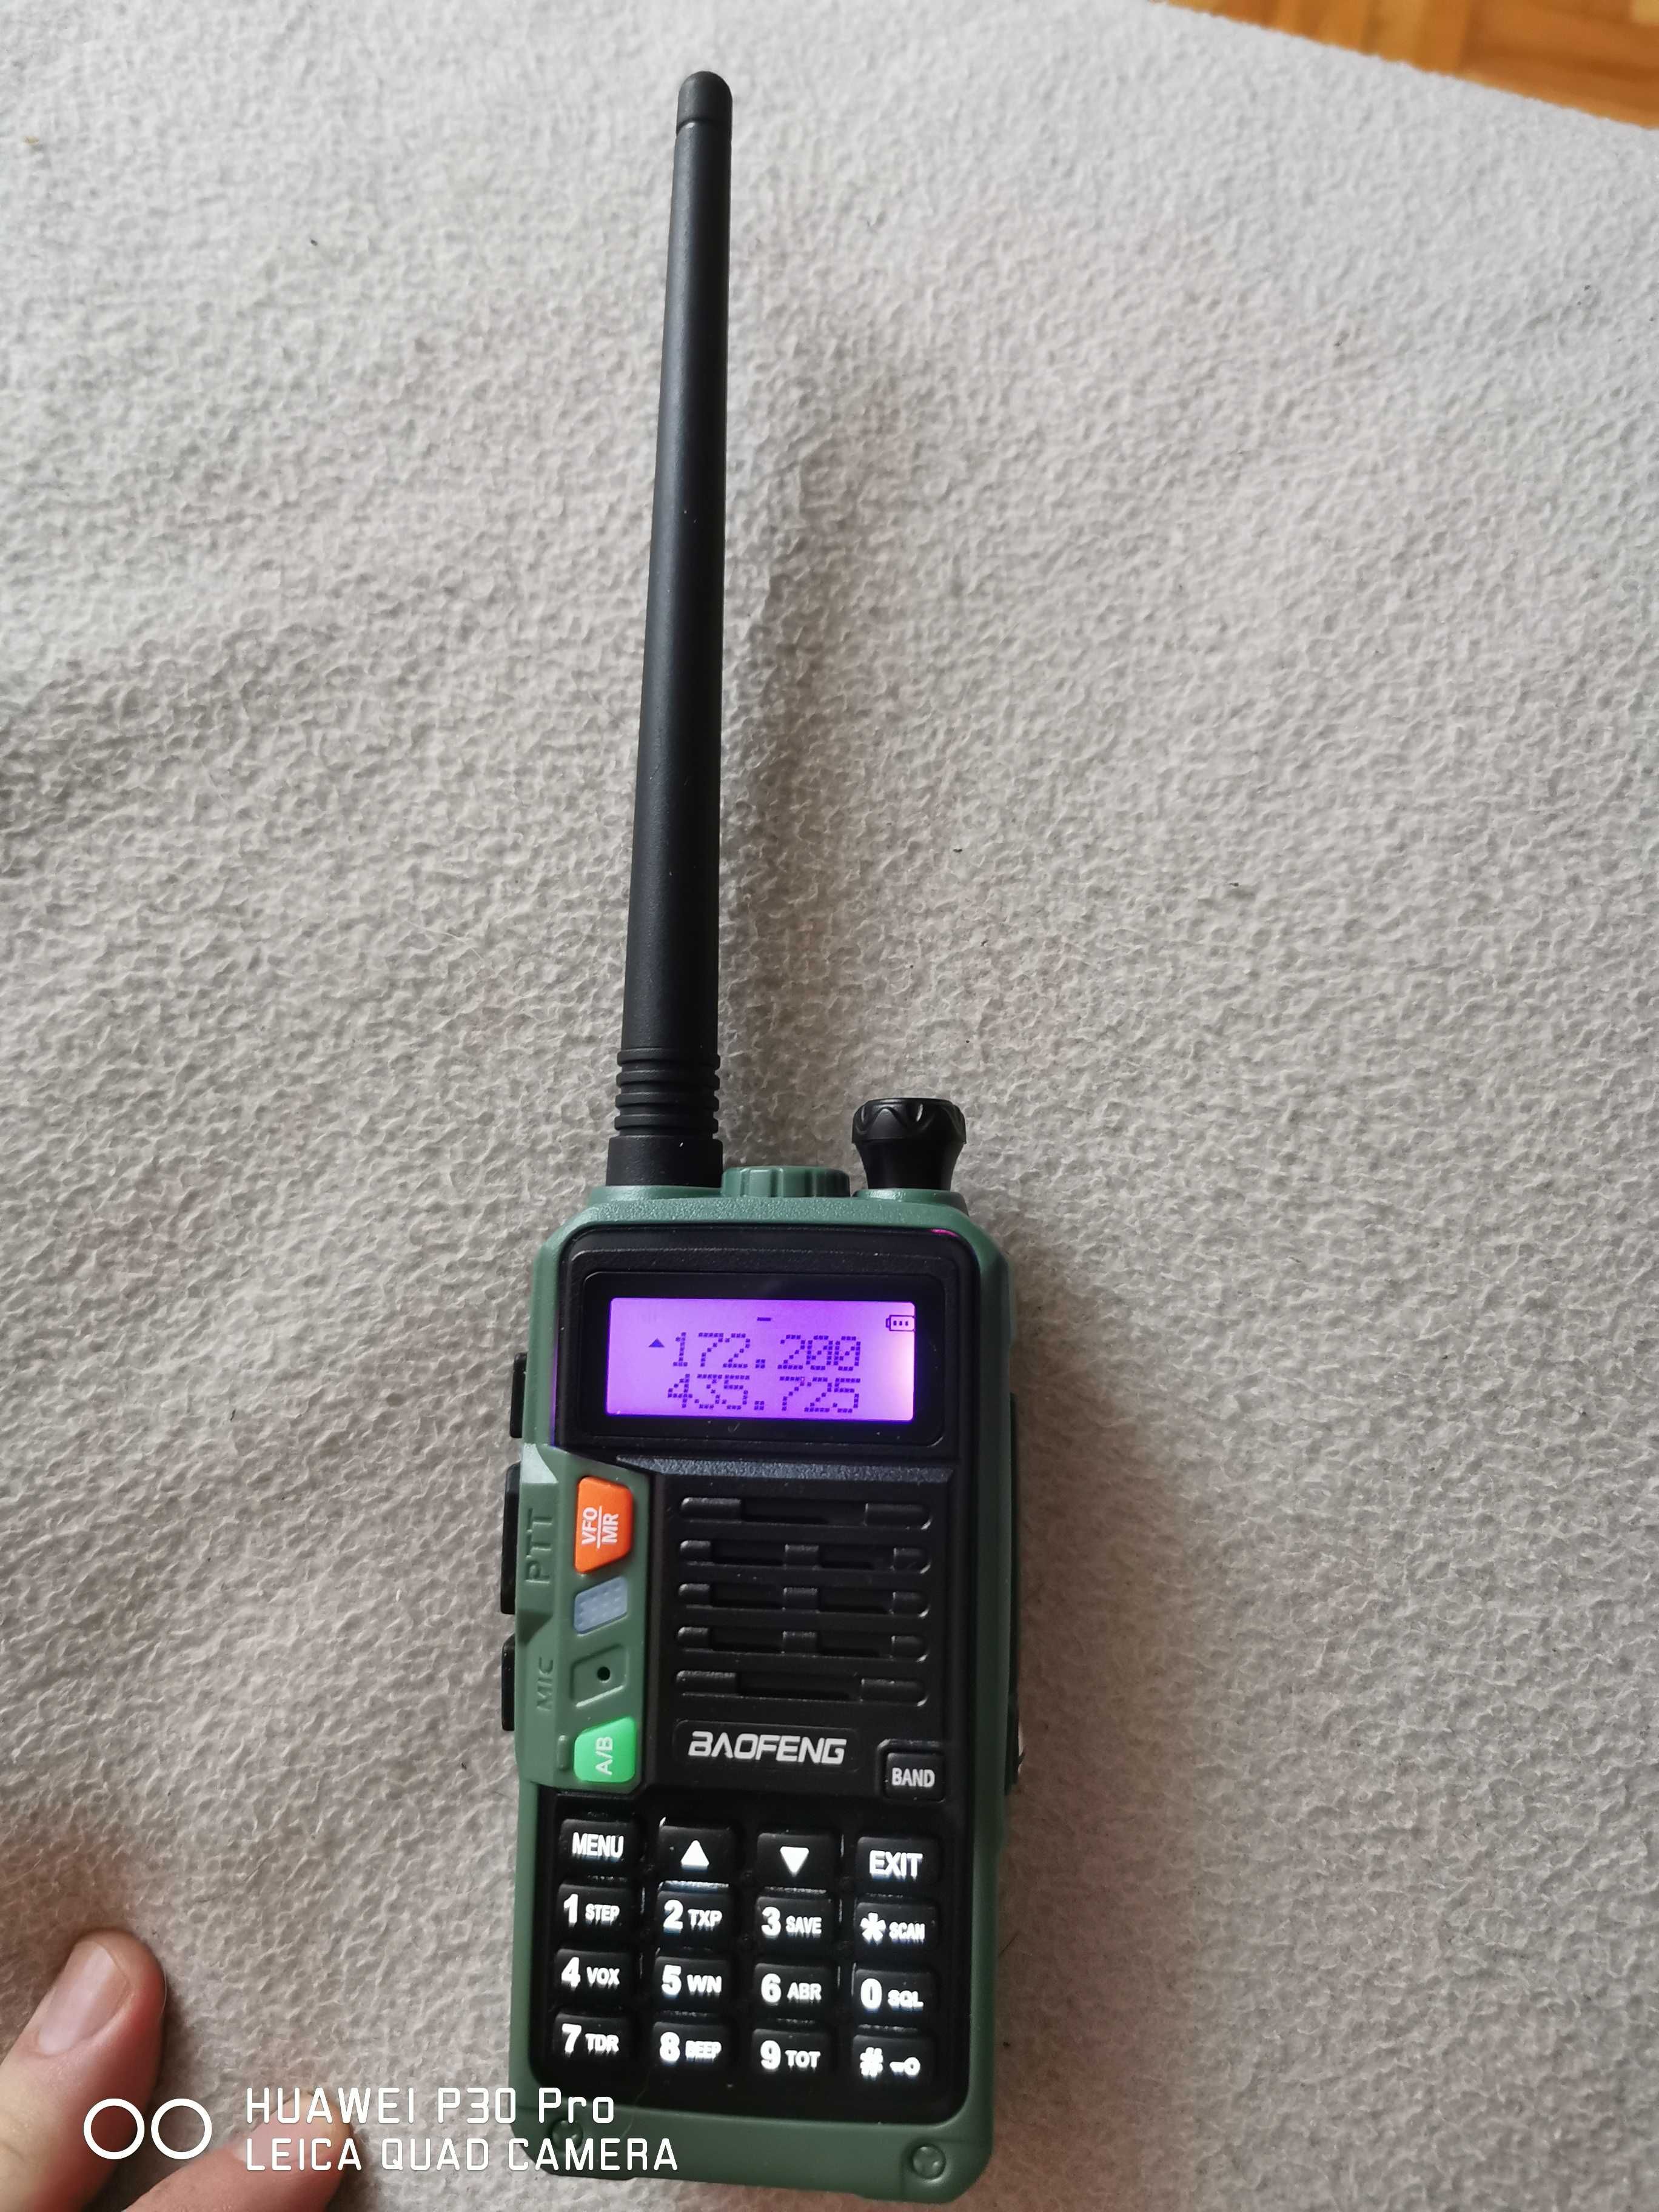 Radiotelefon BAOFENG UV S9 Plus nowy